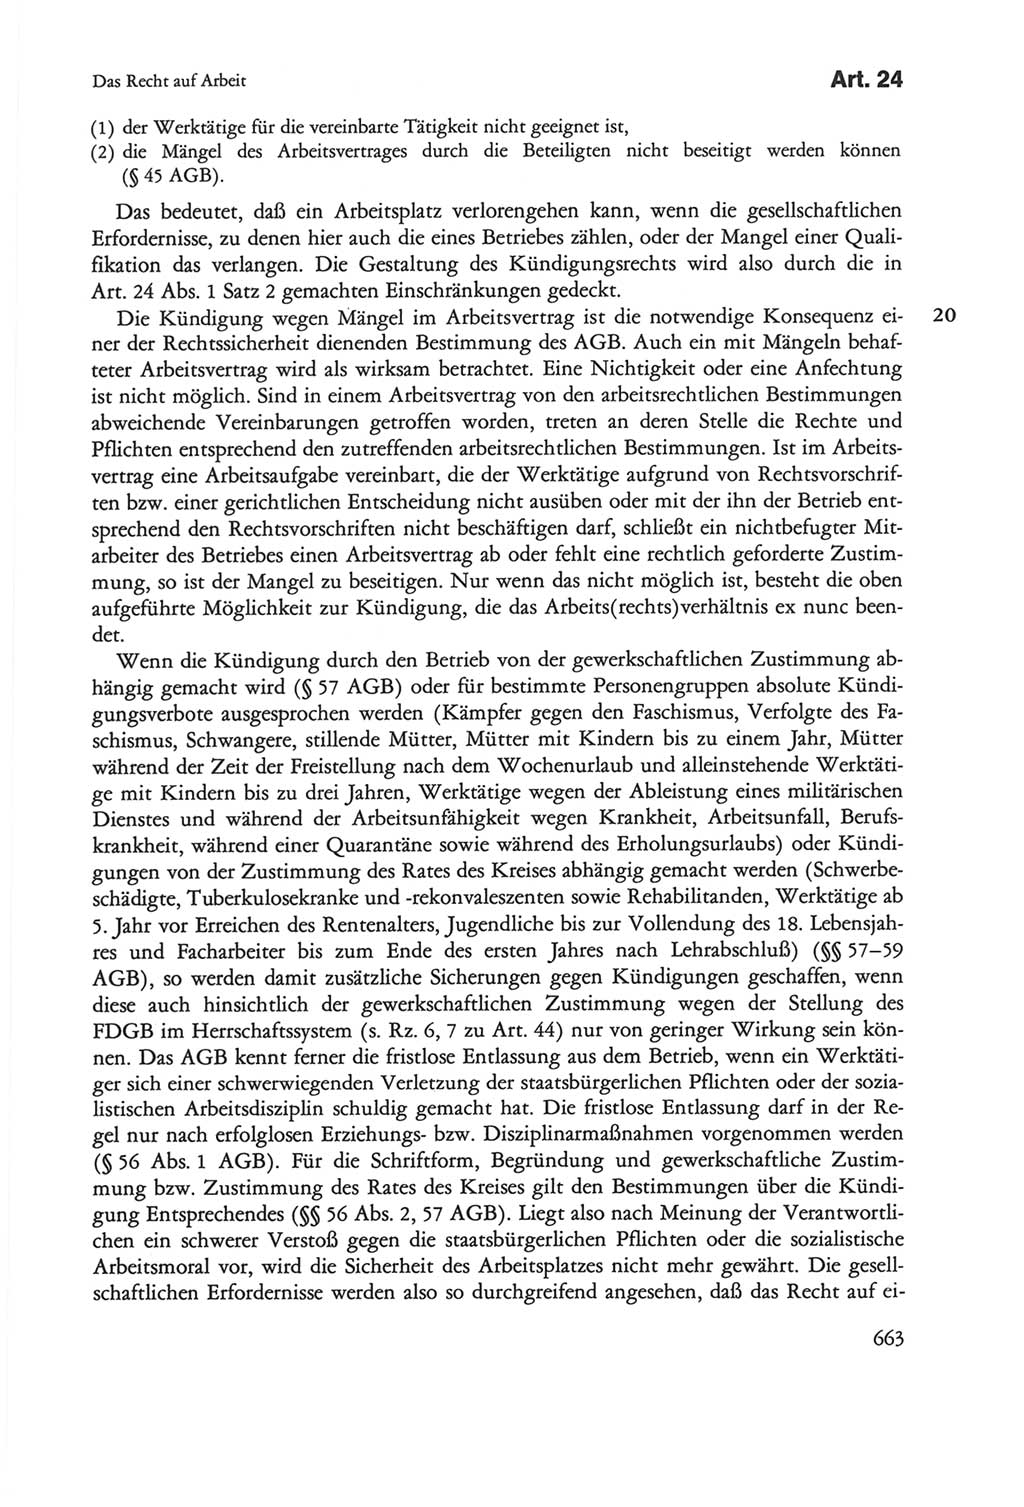 Die sozialistische Verfassung der Deutschen Demokratischen Republik (DDR), Kommentar mit einem Nachtrag 1997, Seite 663 (Soz. Verf. DDR Komm. Nachtr. 1997, S. 663)